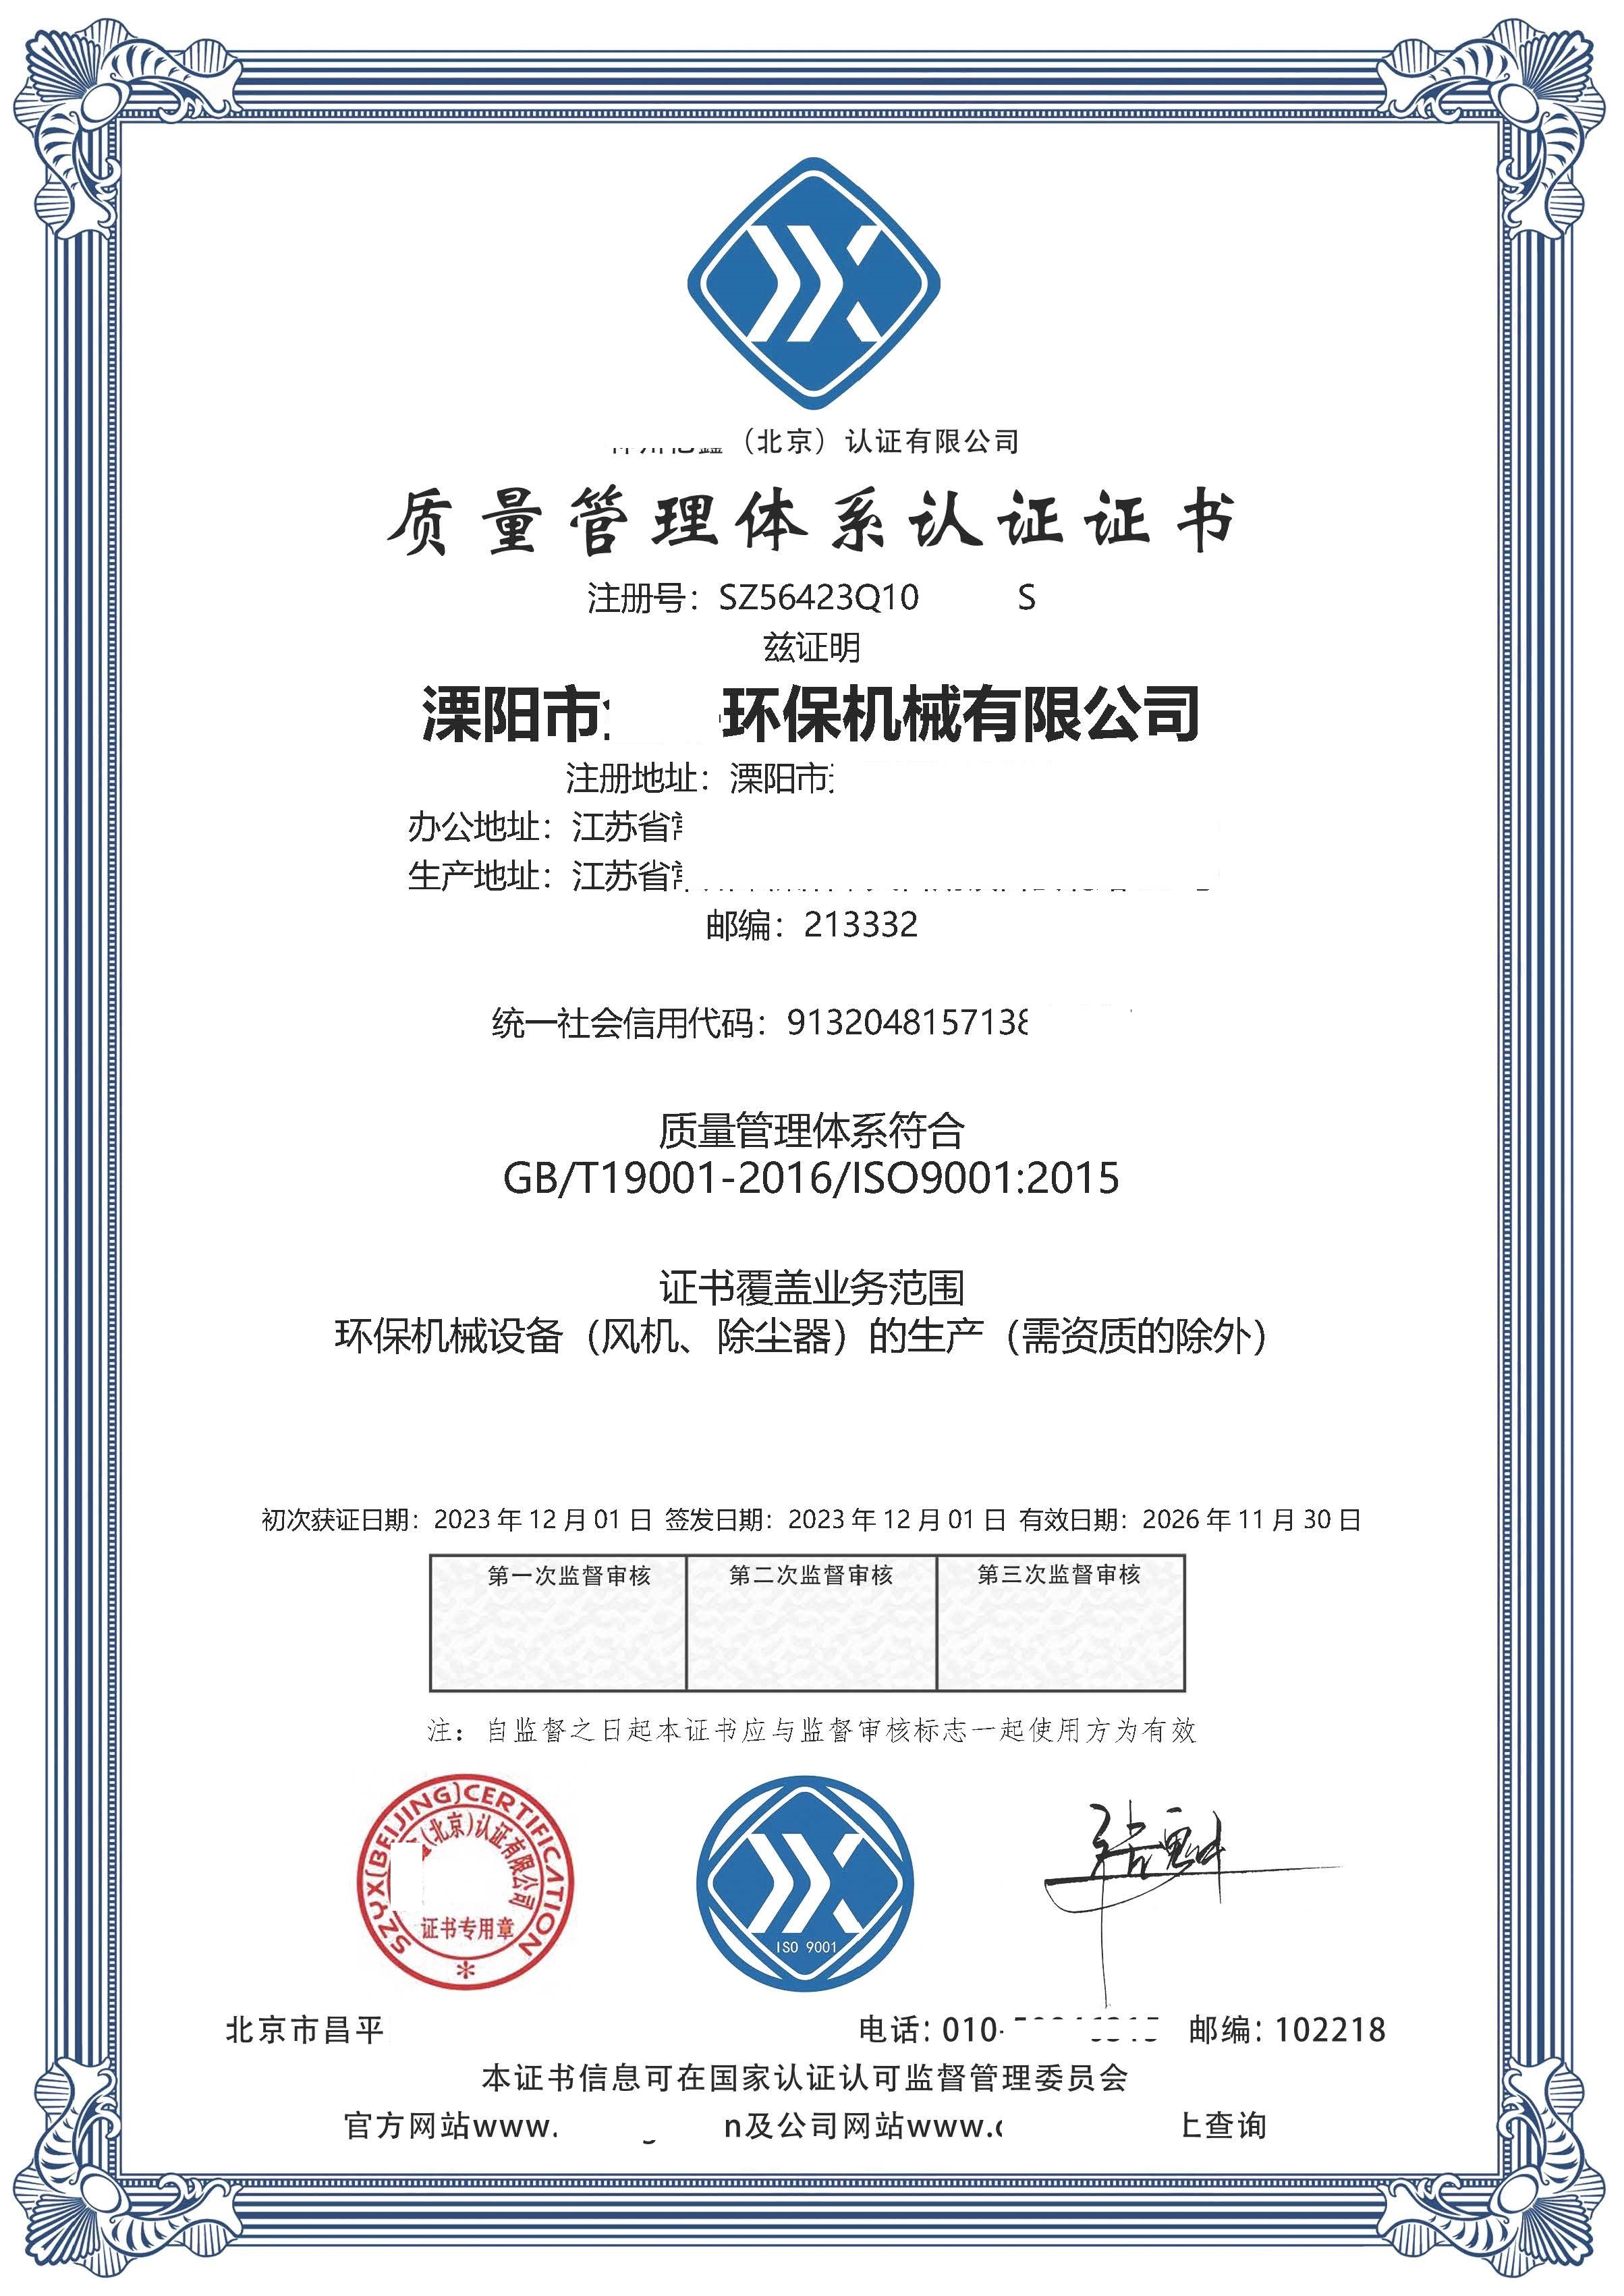 恭喜  溧阳市**环保机械有限公司  获得ISO9001质量、ISO14001环境、ISO45001职业健康安全管理体系认证证书